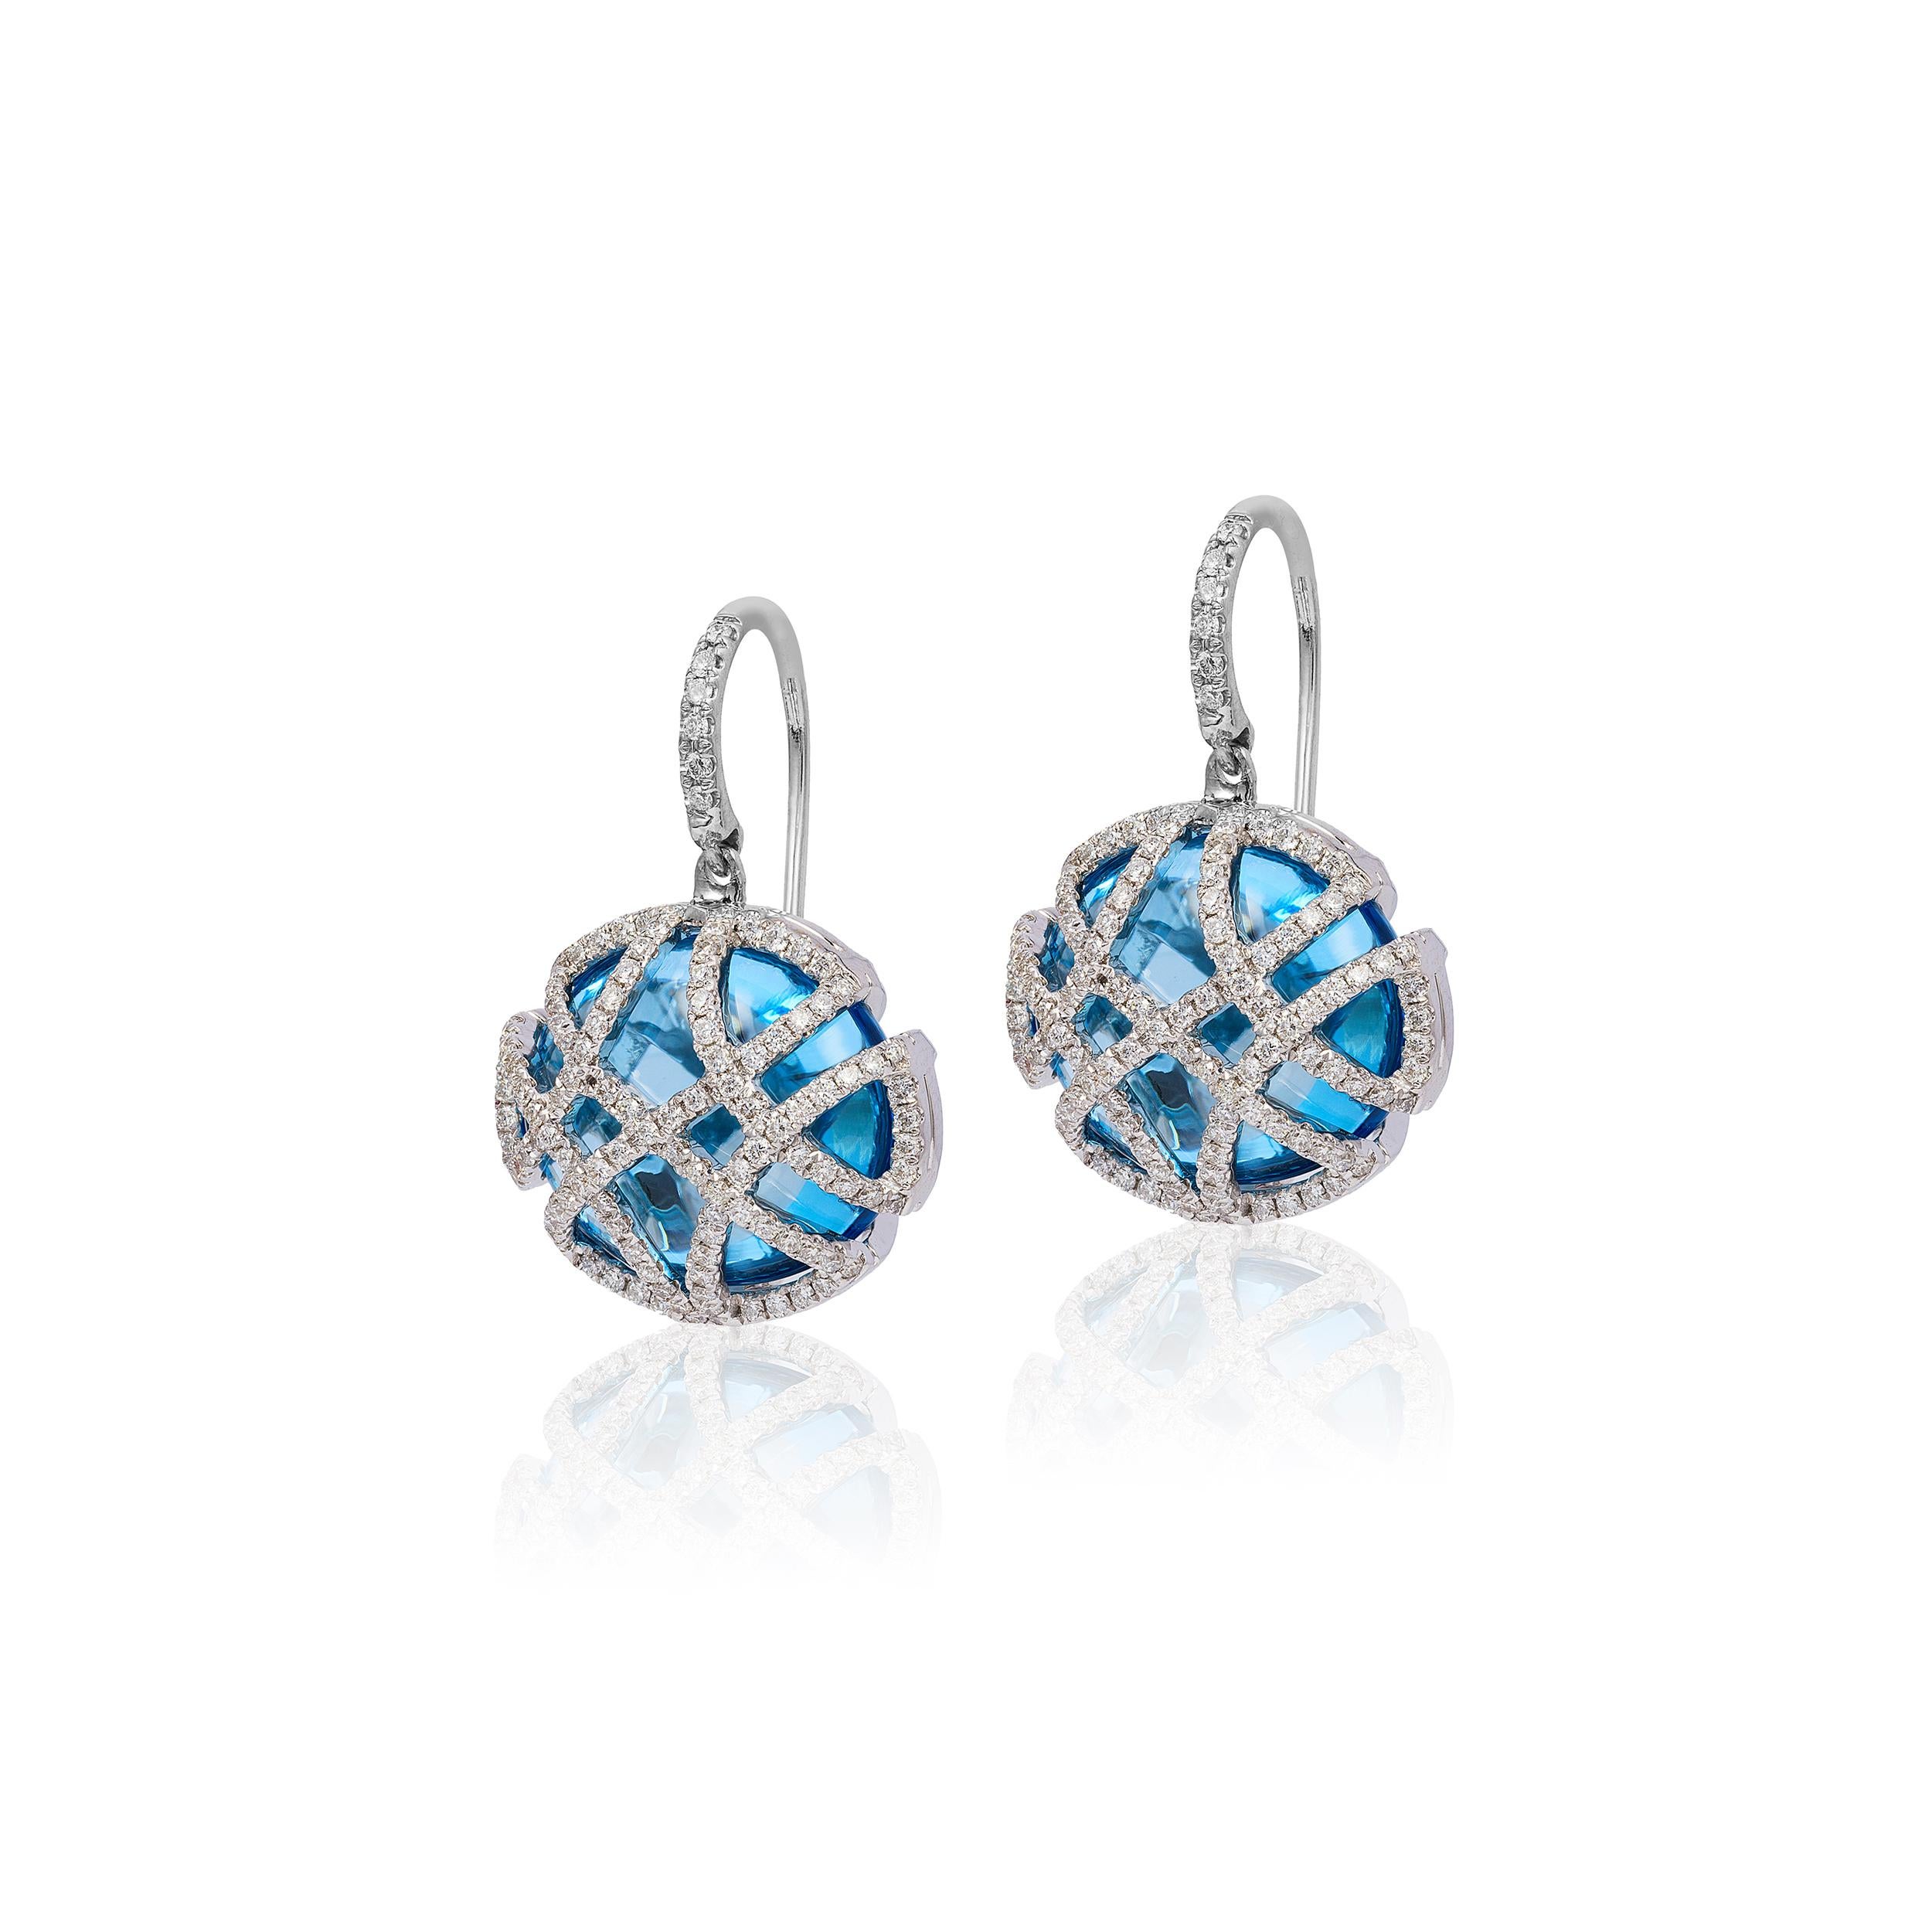 Oval Cut Goshwara Blue Topaz Oblong with Diamonds Earrings